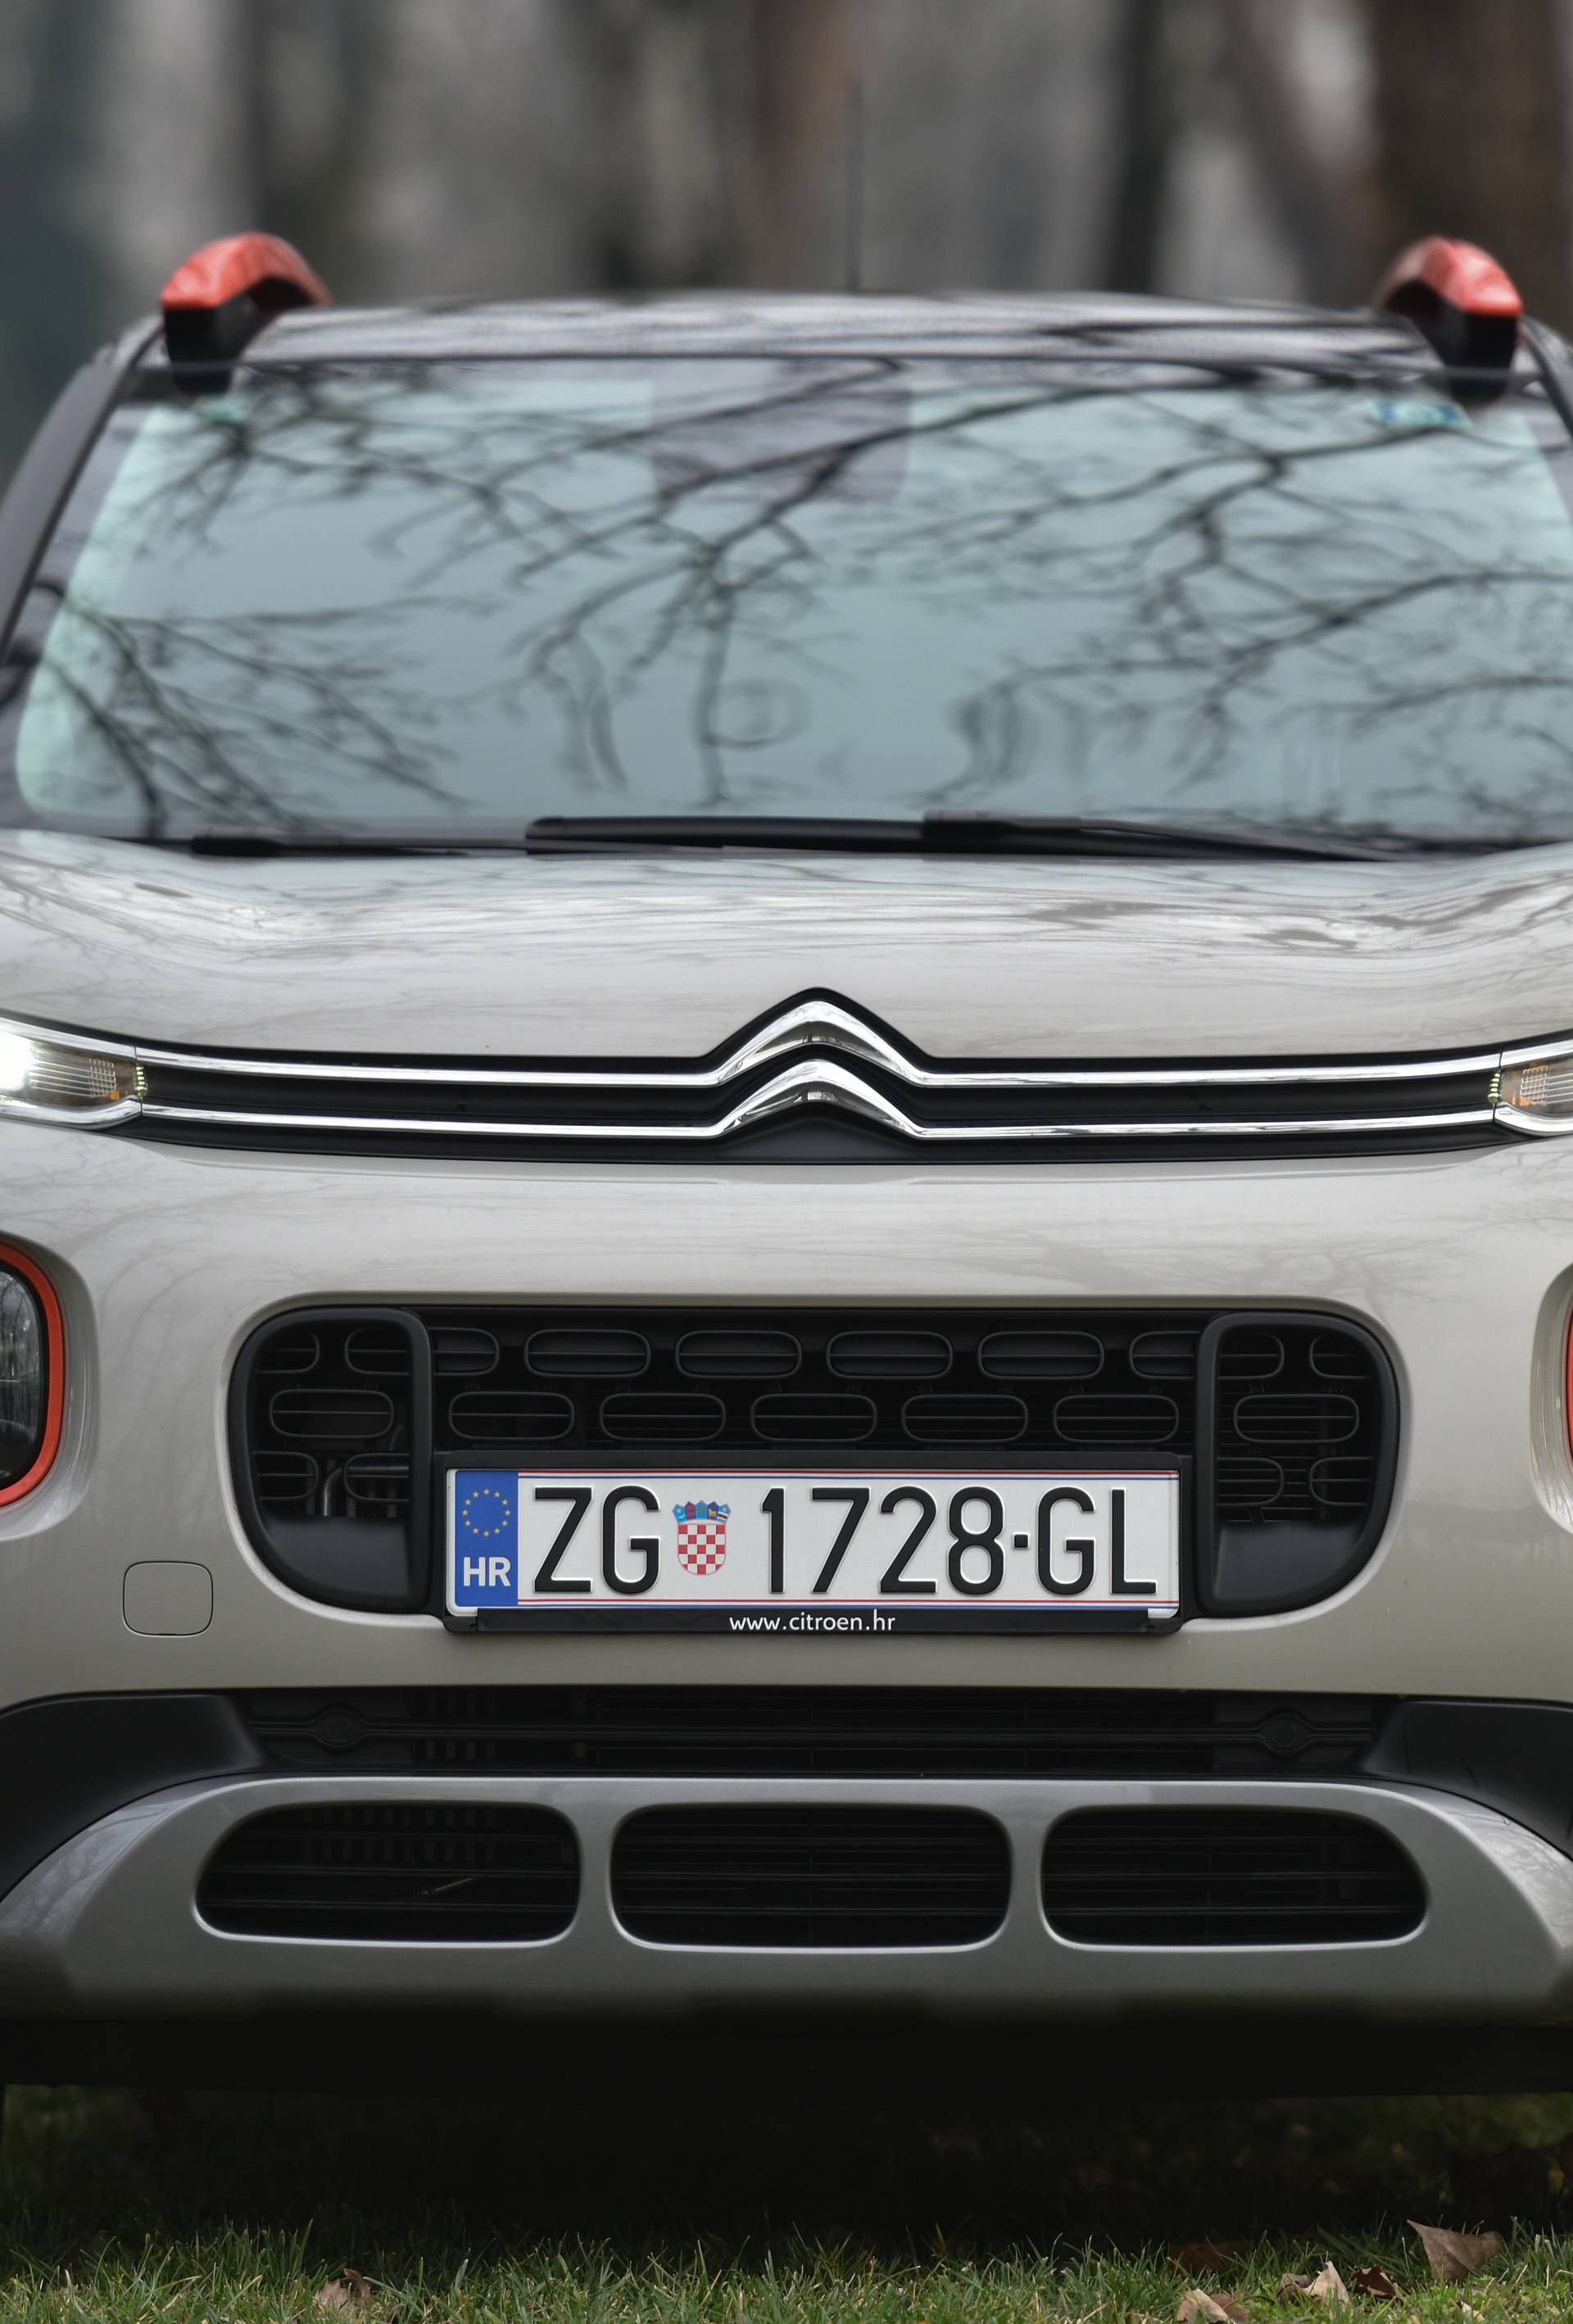 Citroën C3 Aircross na testu: Najbolji je mali francuski SUV